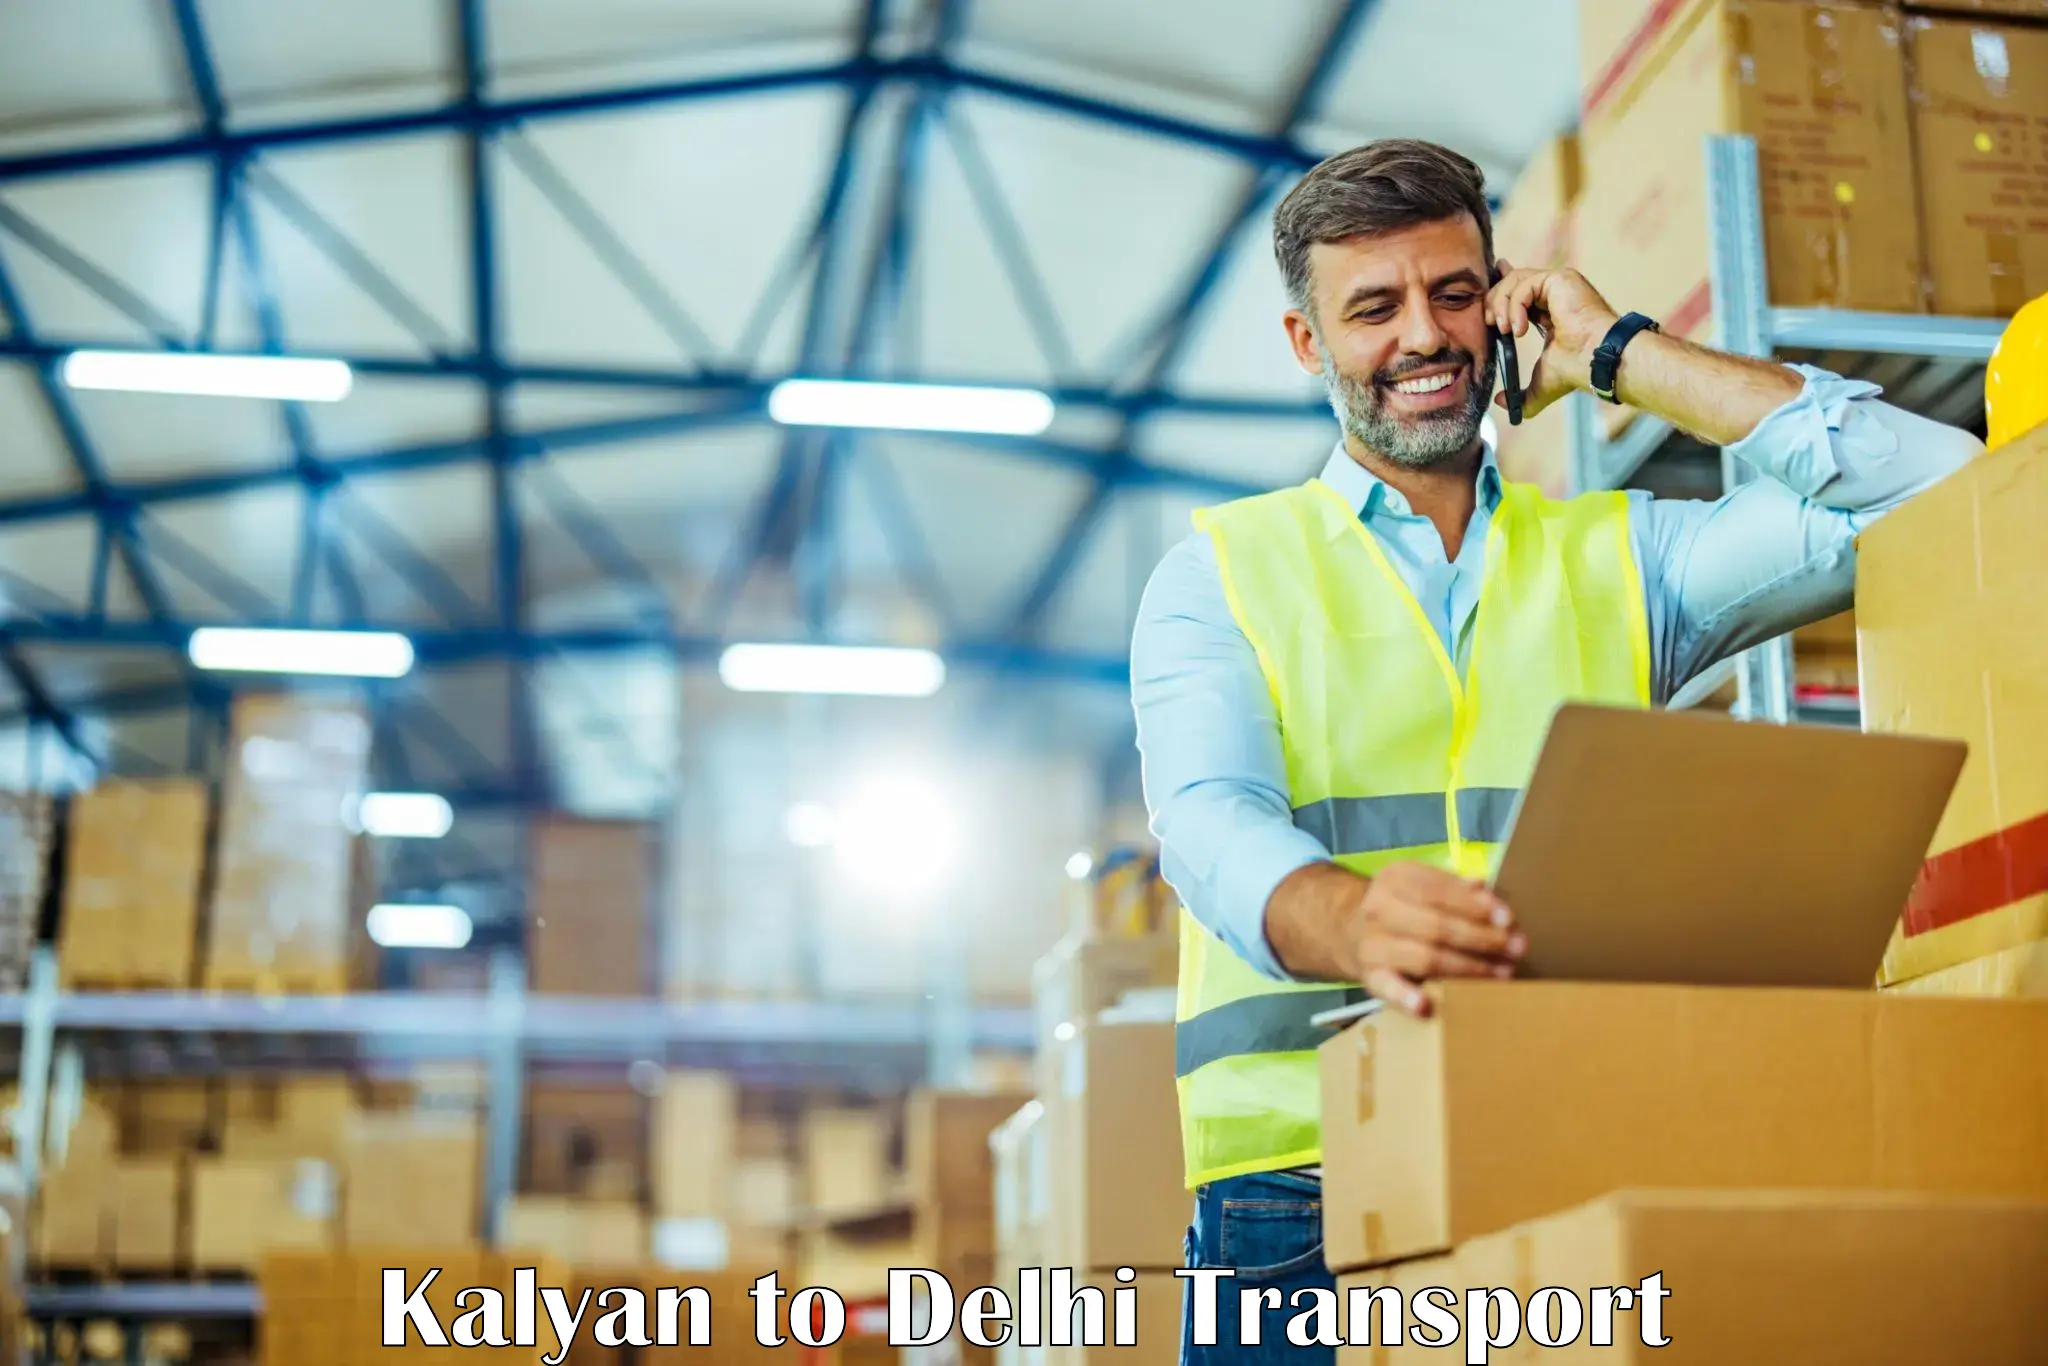 Nearest transport service Kalyan to NCR